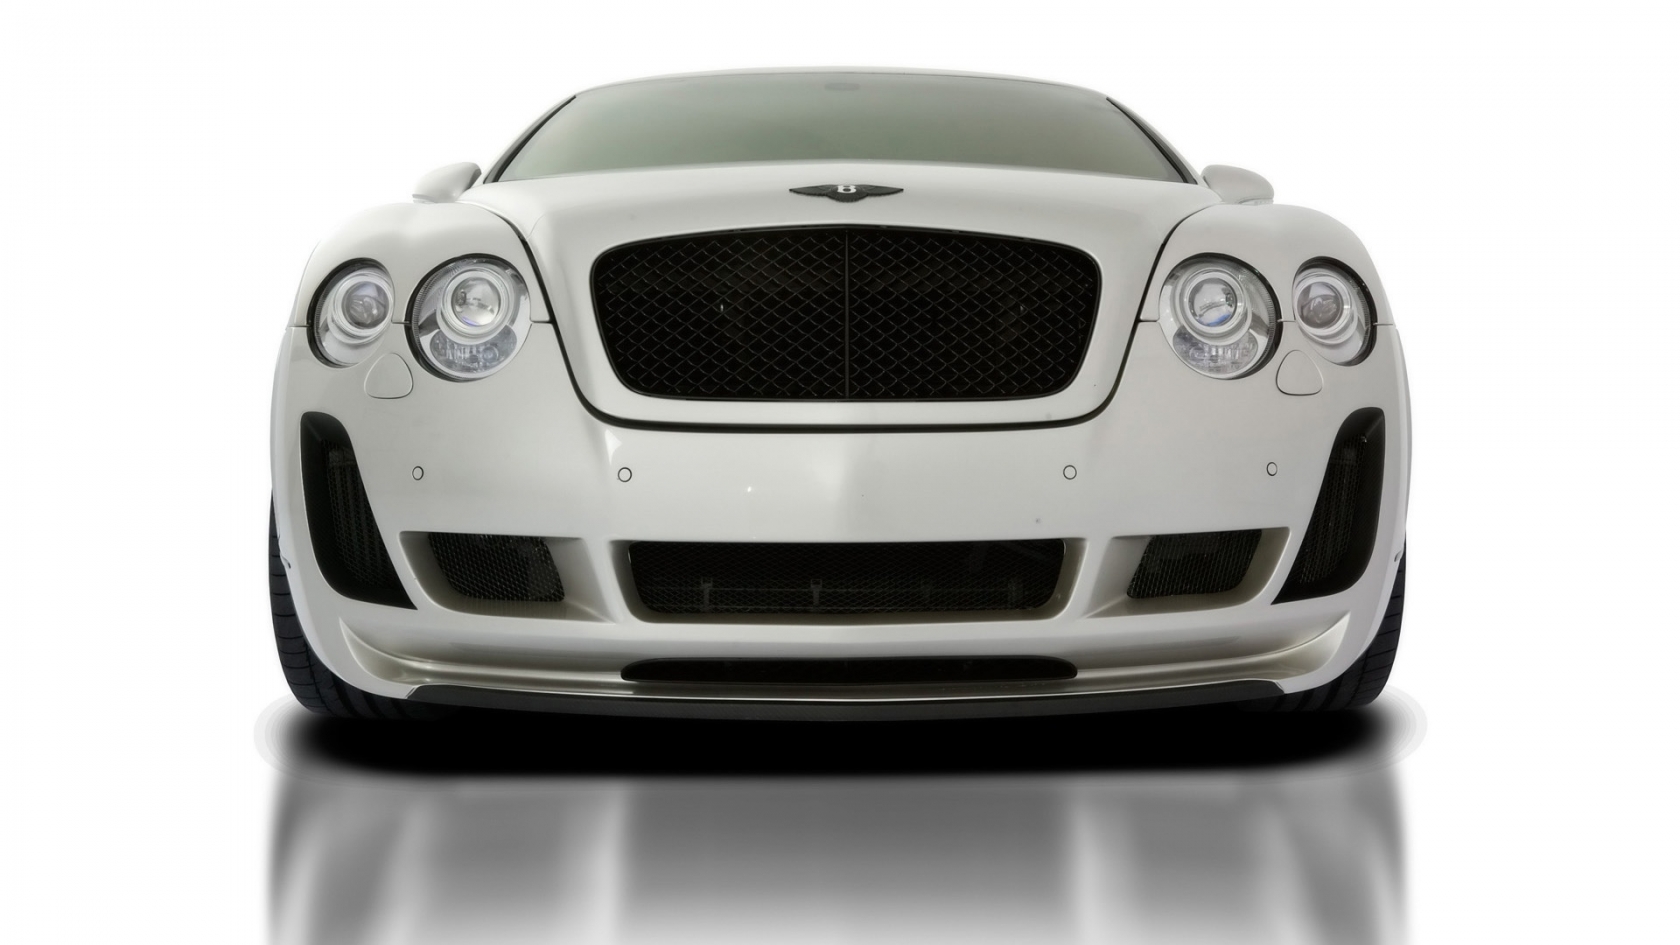 2010 Vorsteiner Bentley Continental GT BR9 Edition for 1680 x 945 HDTV resolution